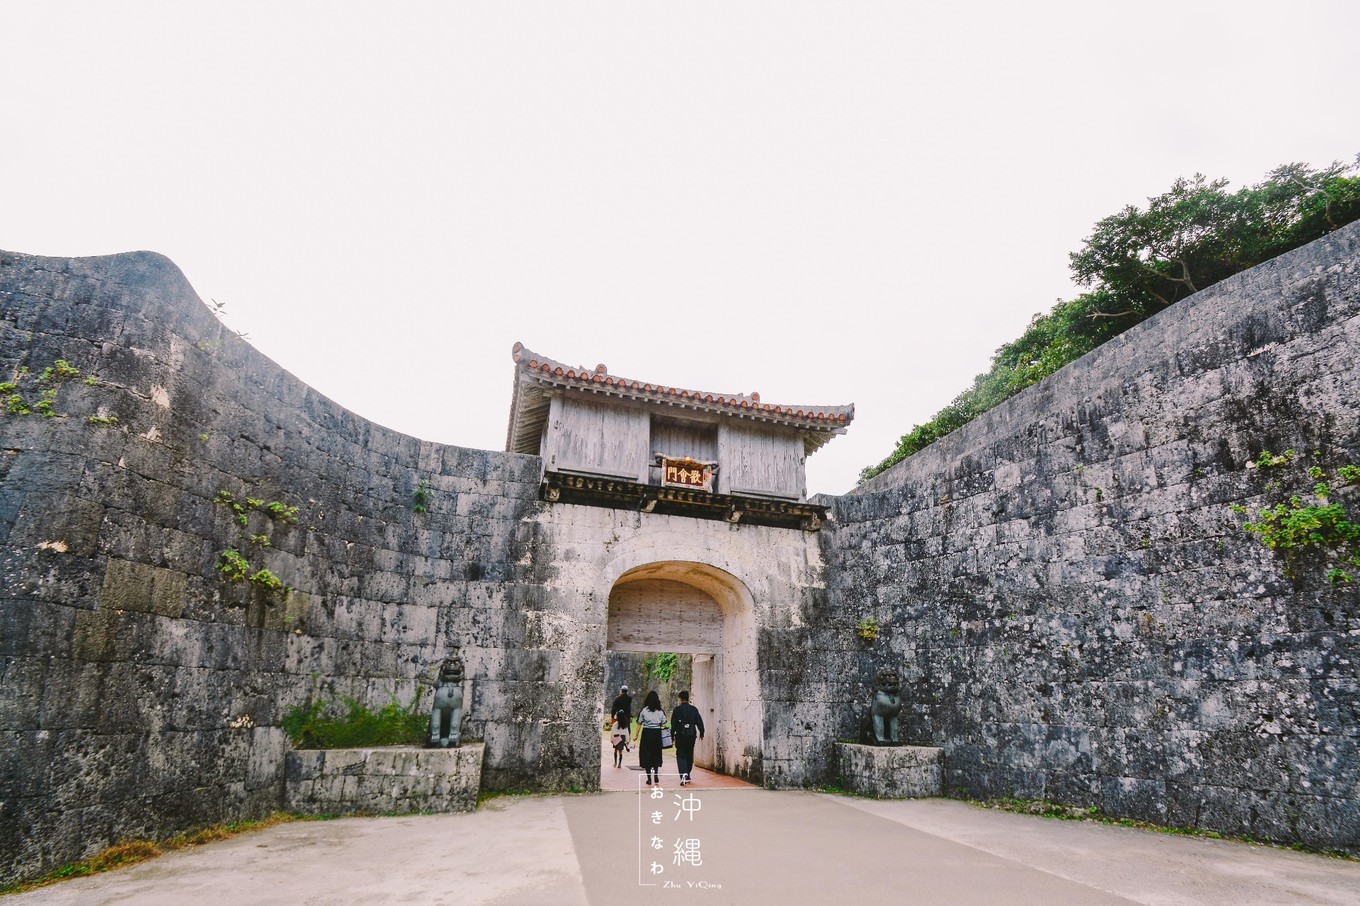 中国帮助修建的日本城堡,康熙爷曾亲自题字,如